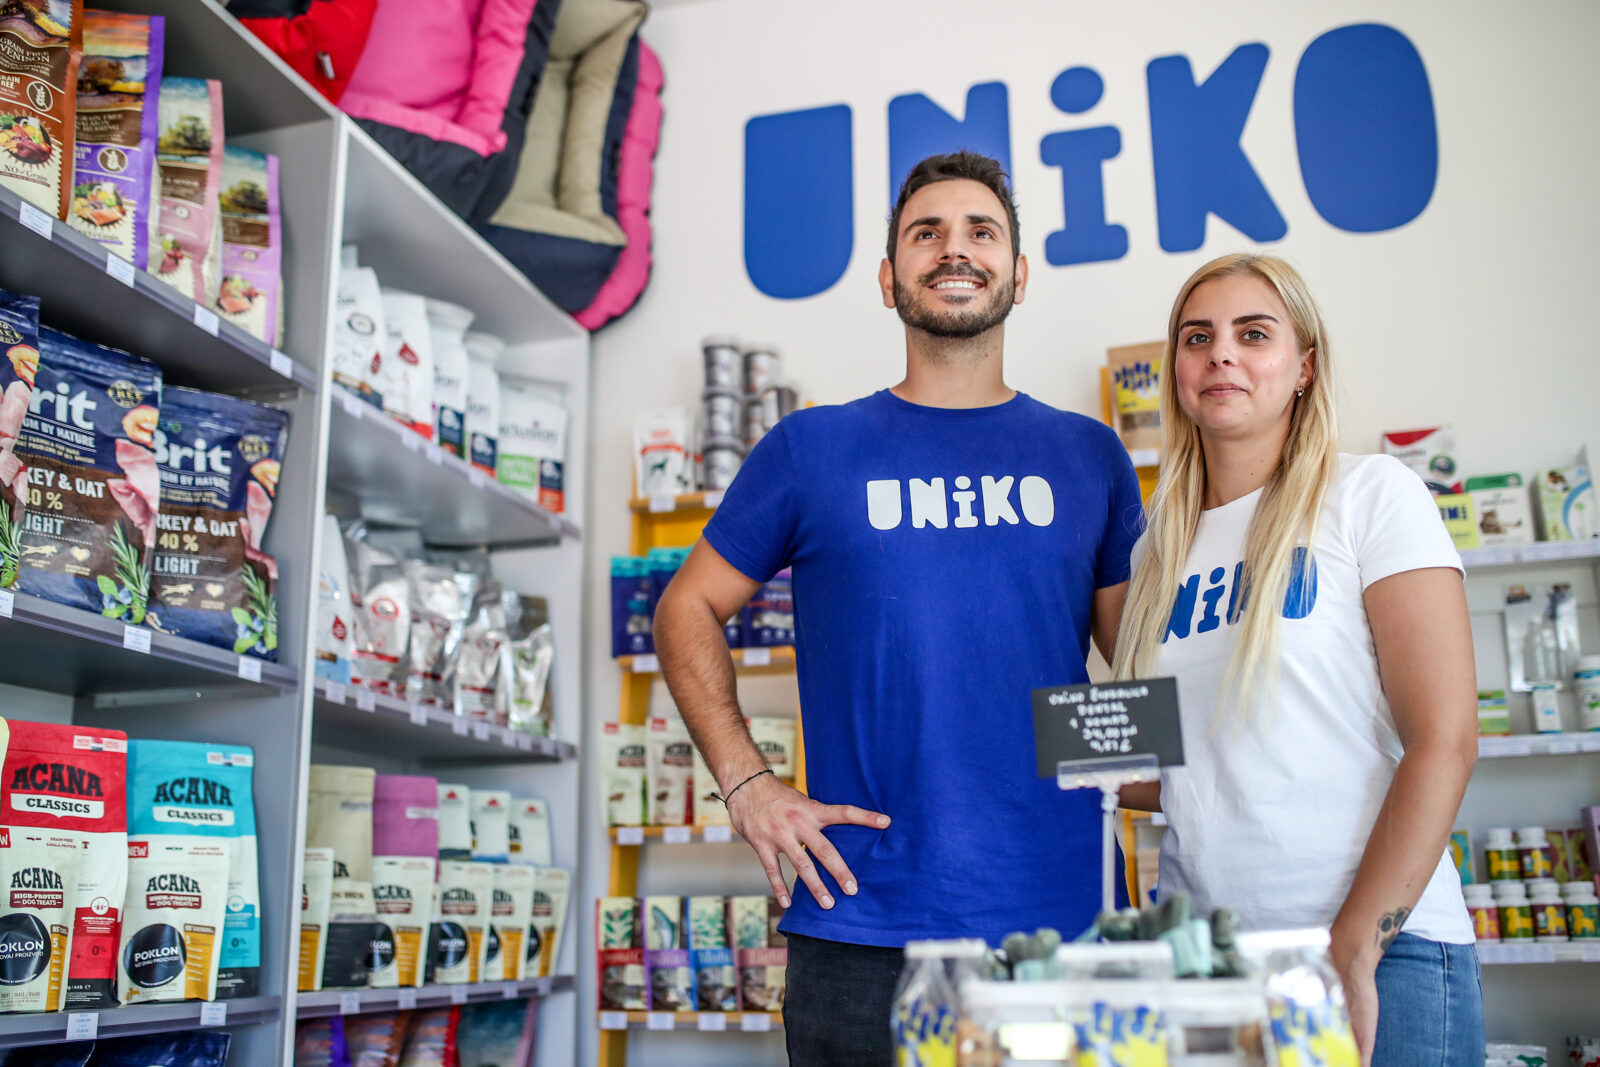 Zagreb: Uniko Pet Shop